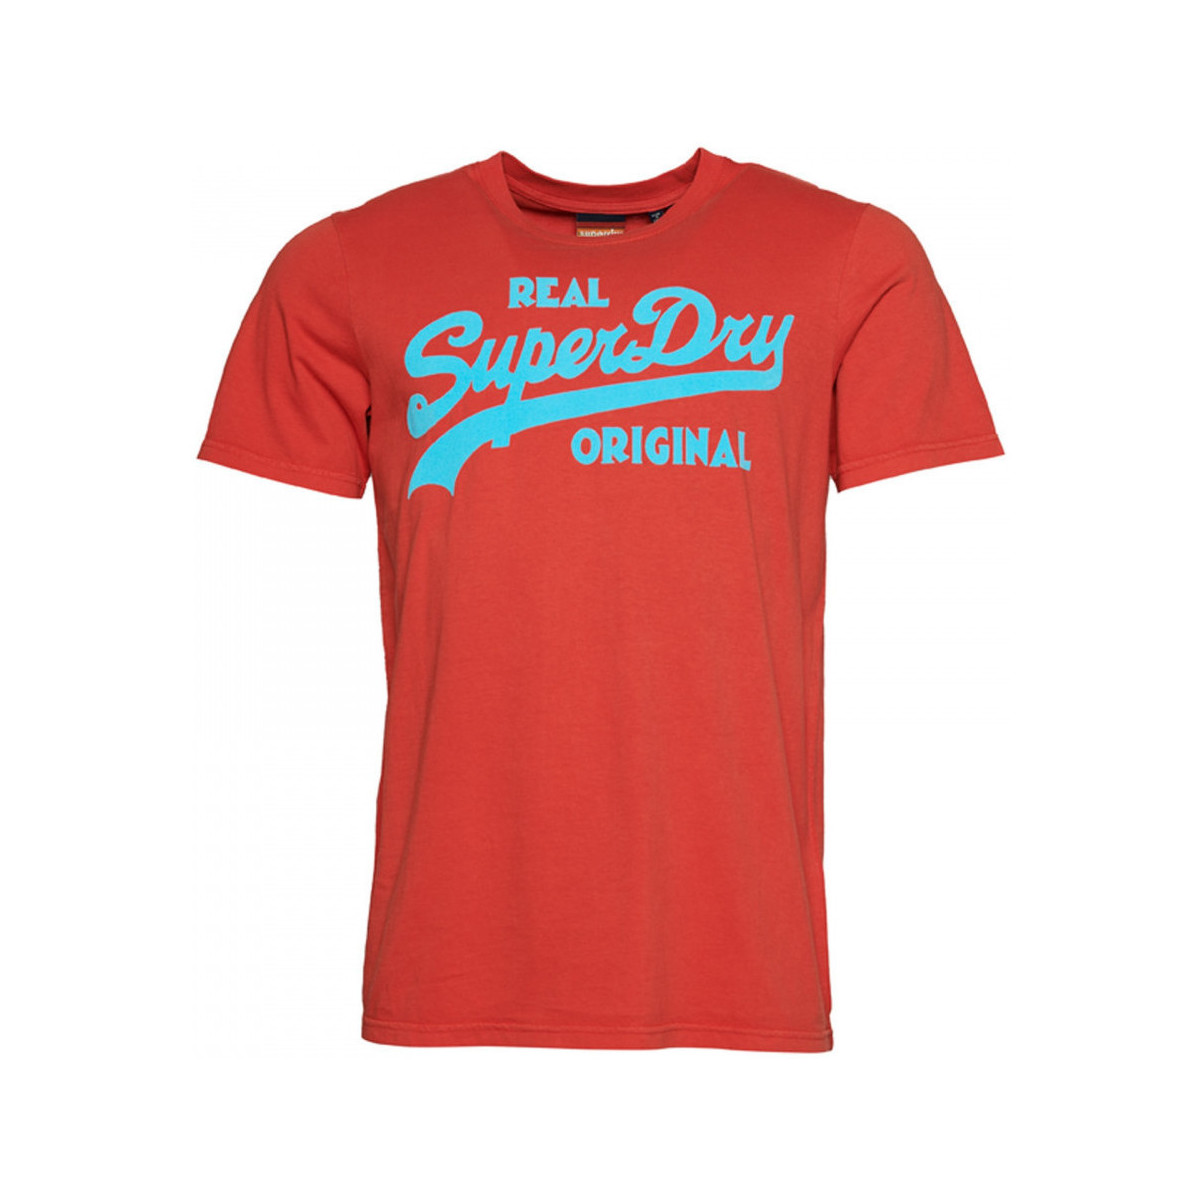 Υφασμάτινα Άνδρας T-shirts & Μπλούζες Superdry Vintage vl neon Red